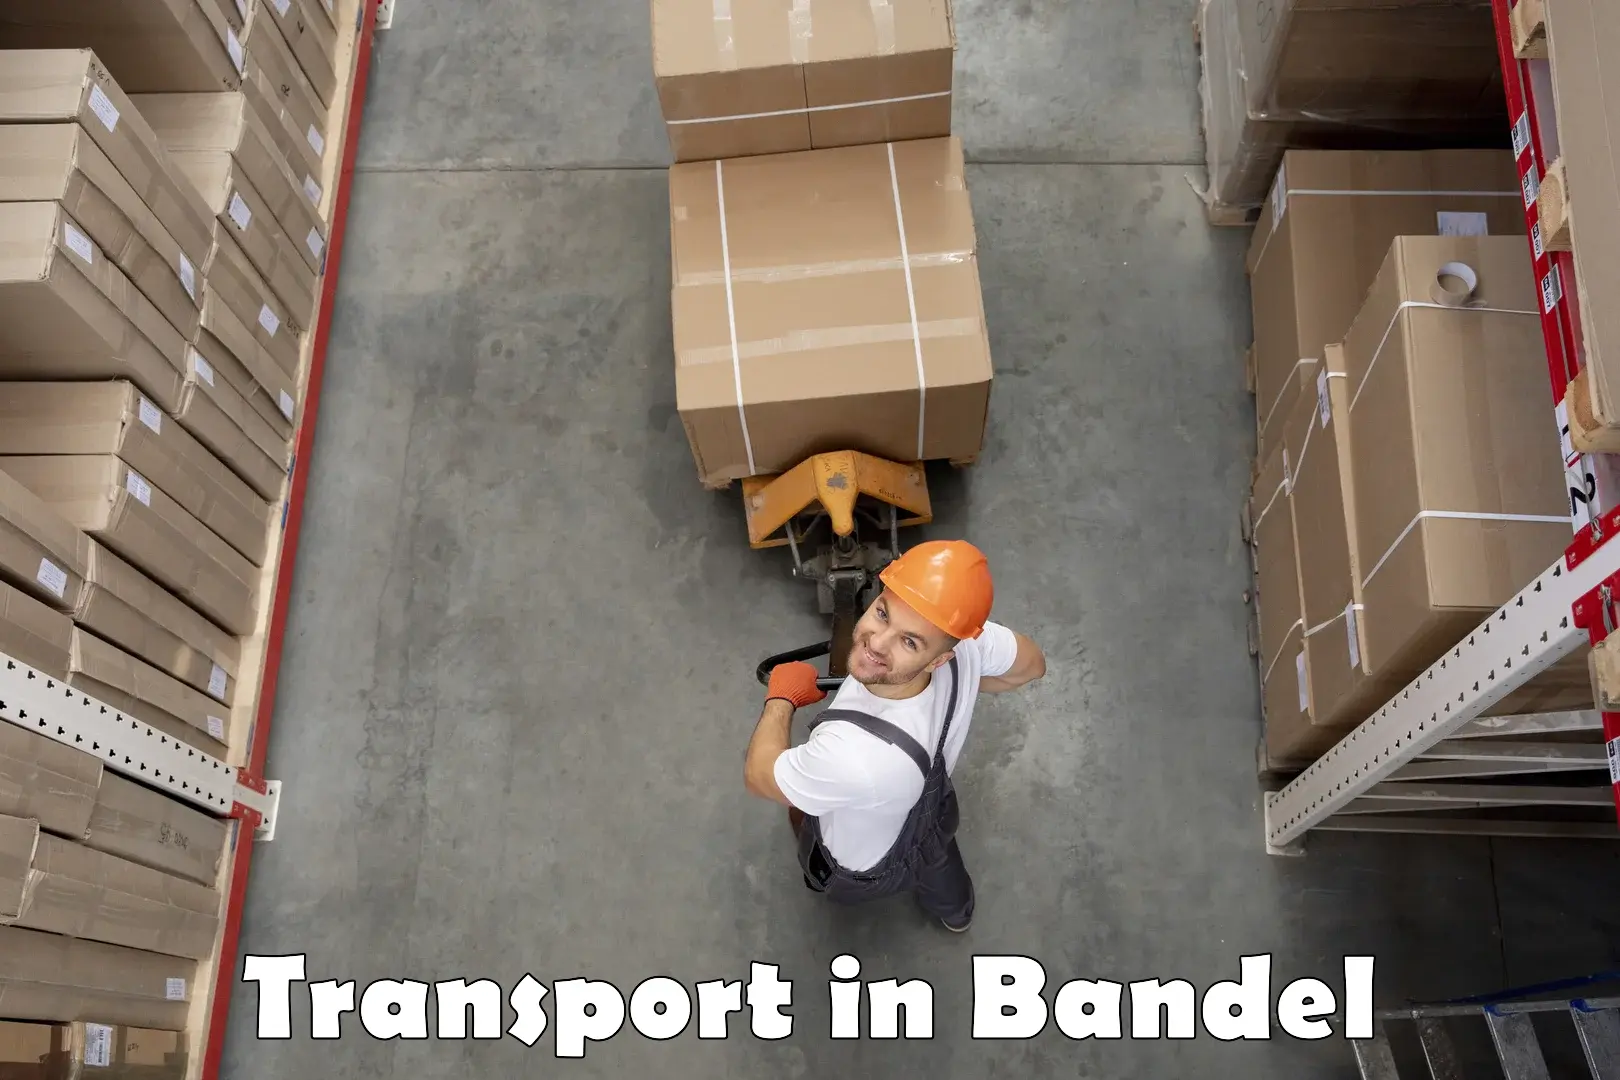 Furniture transport service in Bandel